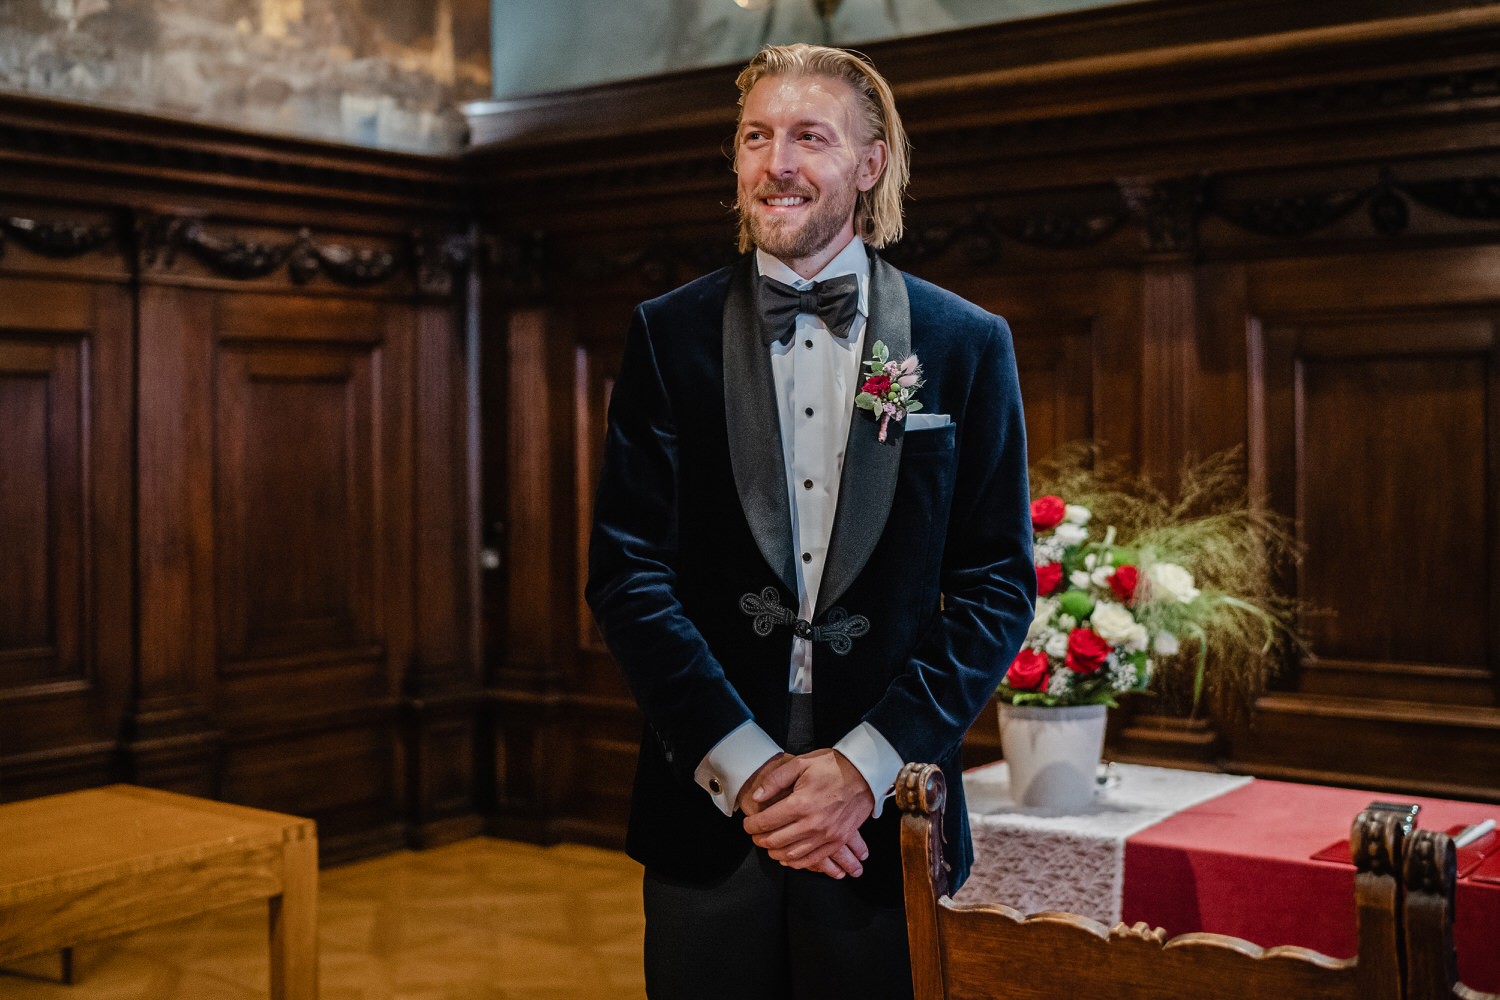 Hochzeit im Standesamt Passau, Bräutigam schaut zur einziehenden Braut